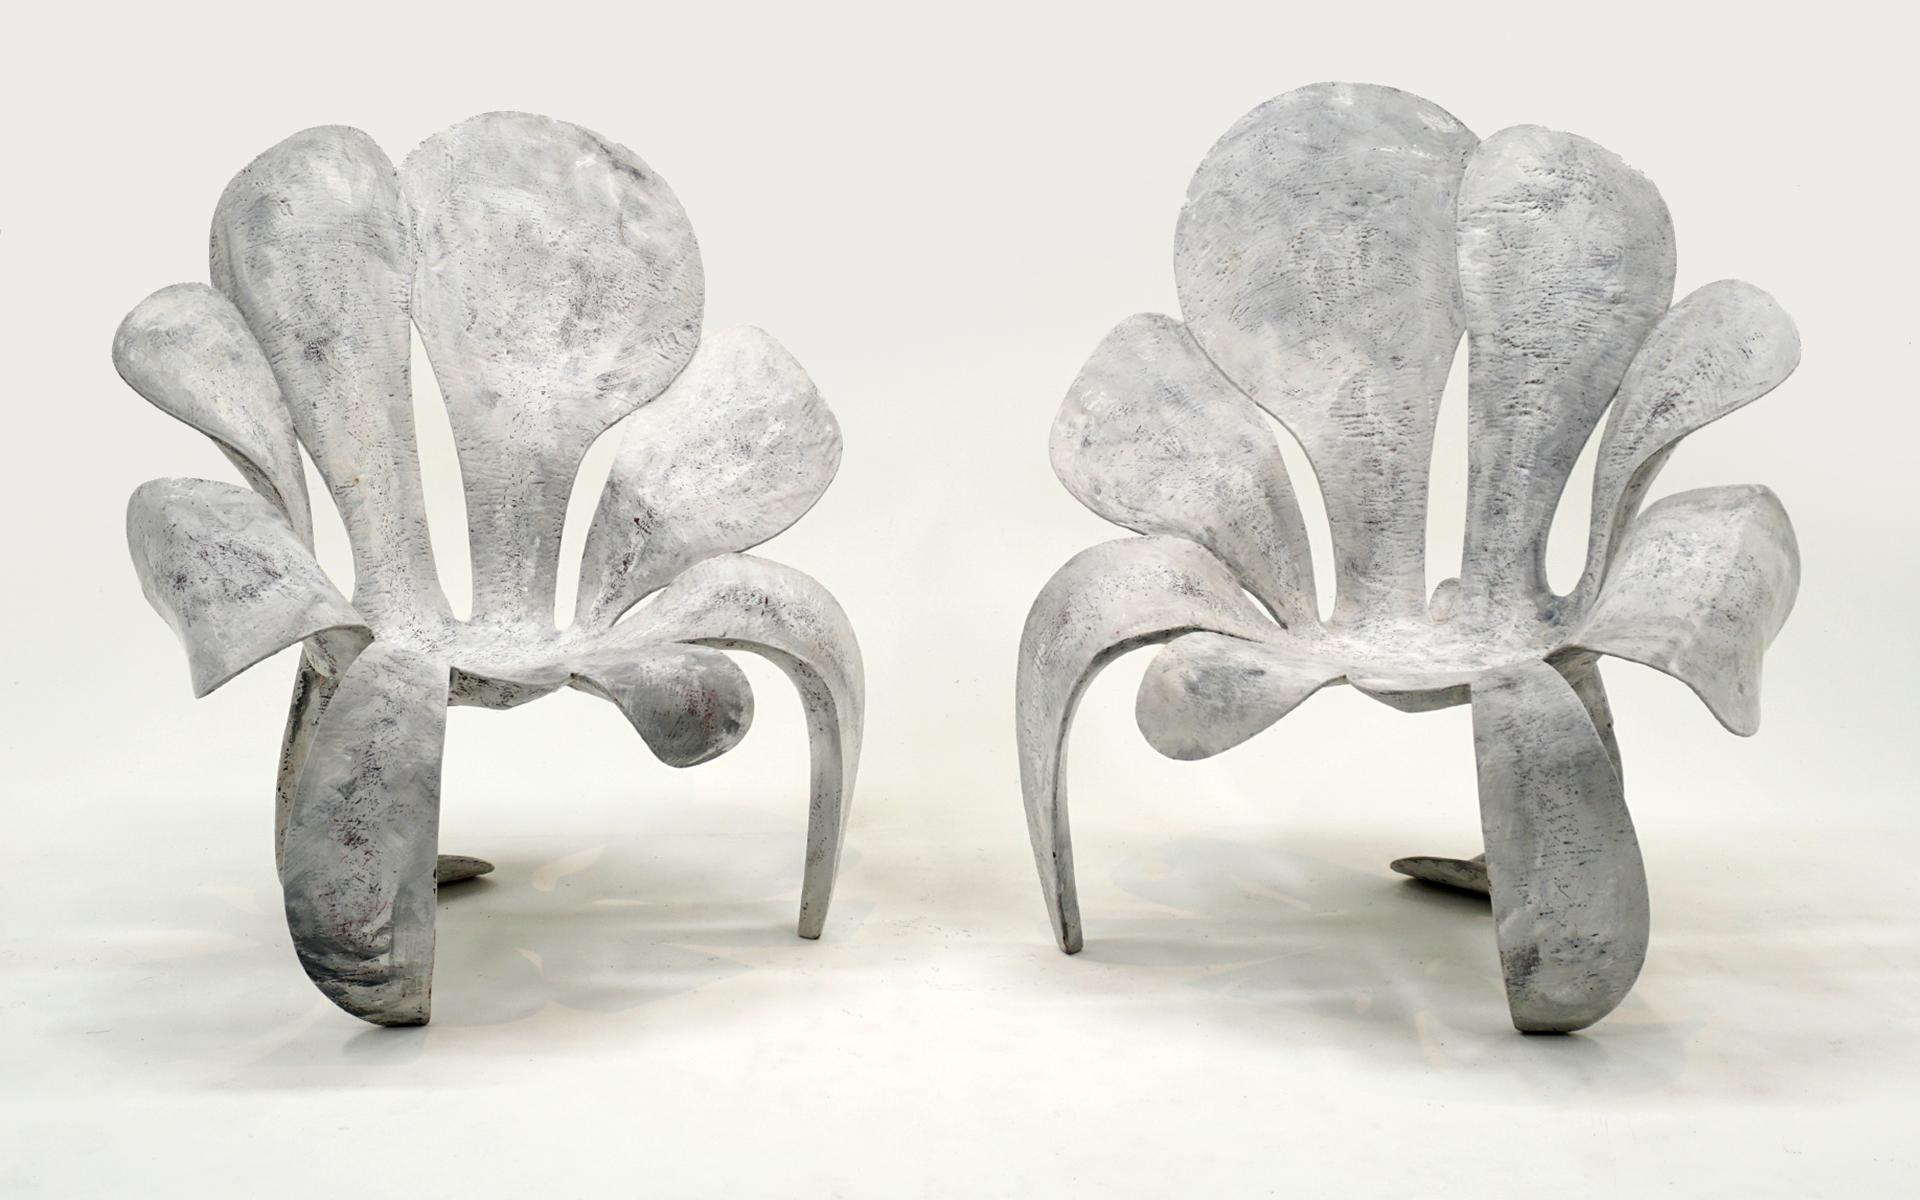 Superbe paire de fauteuils à haut dossier dans un style pétale de fleur dessiné par Yves Boucard.  Construction en composite polychrome très robuste et confortable.  Signé et daté en dessous de chaque exemplaire 